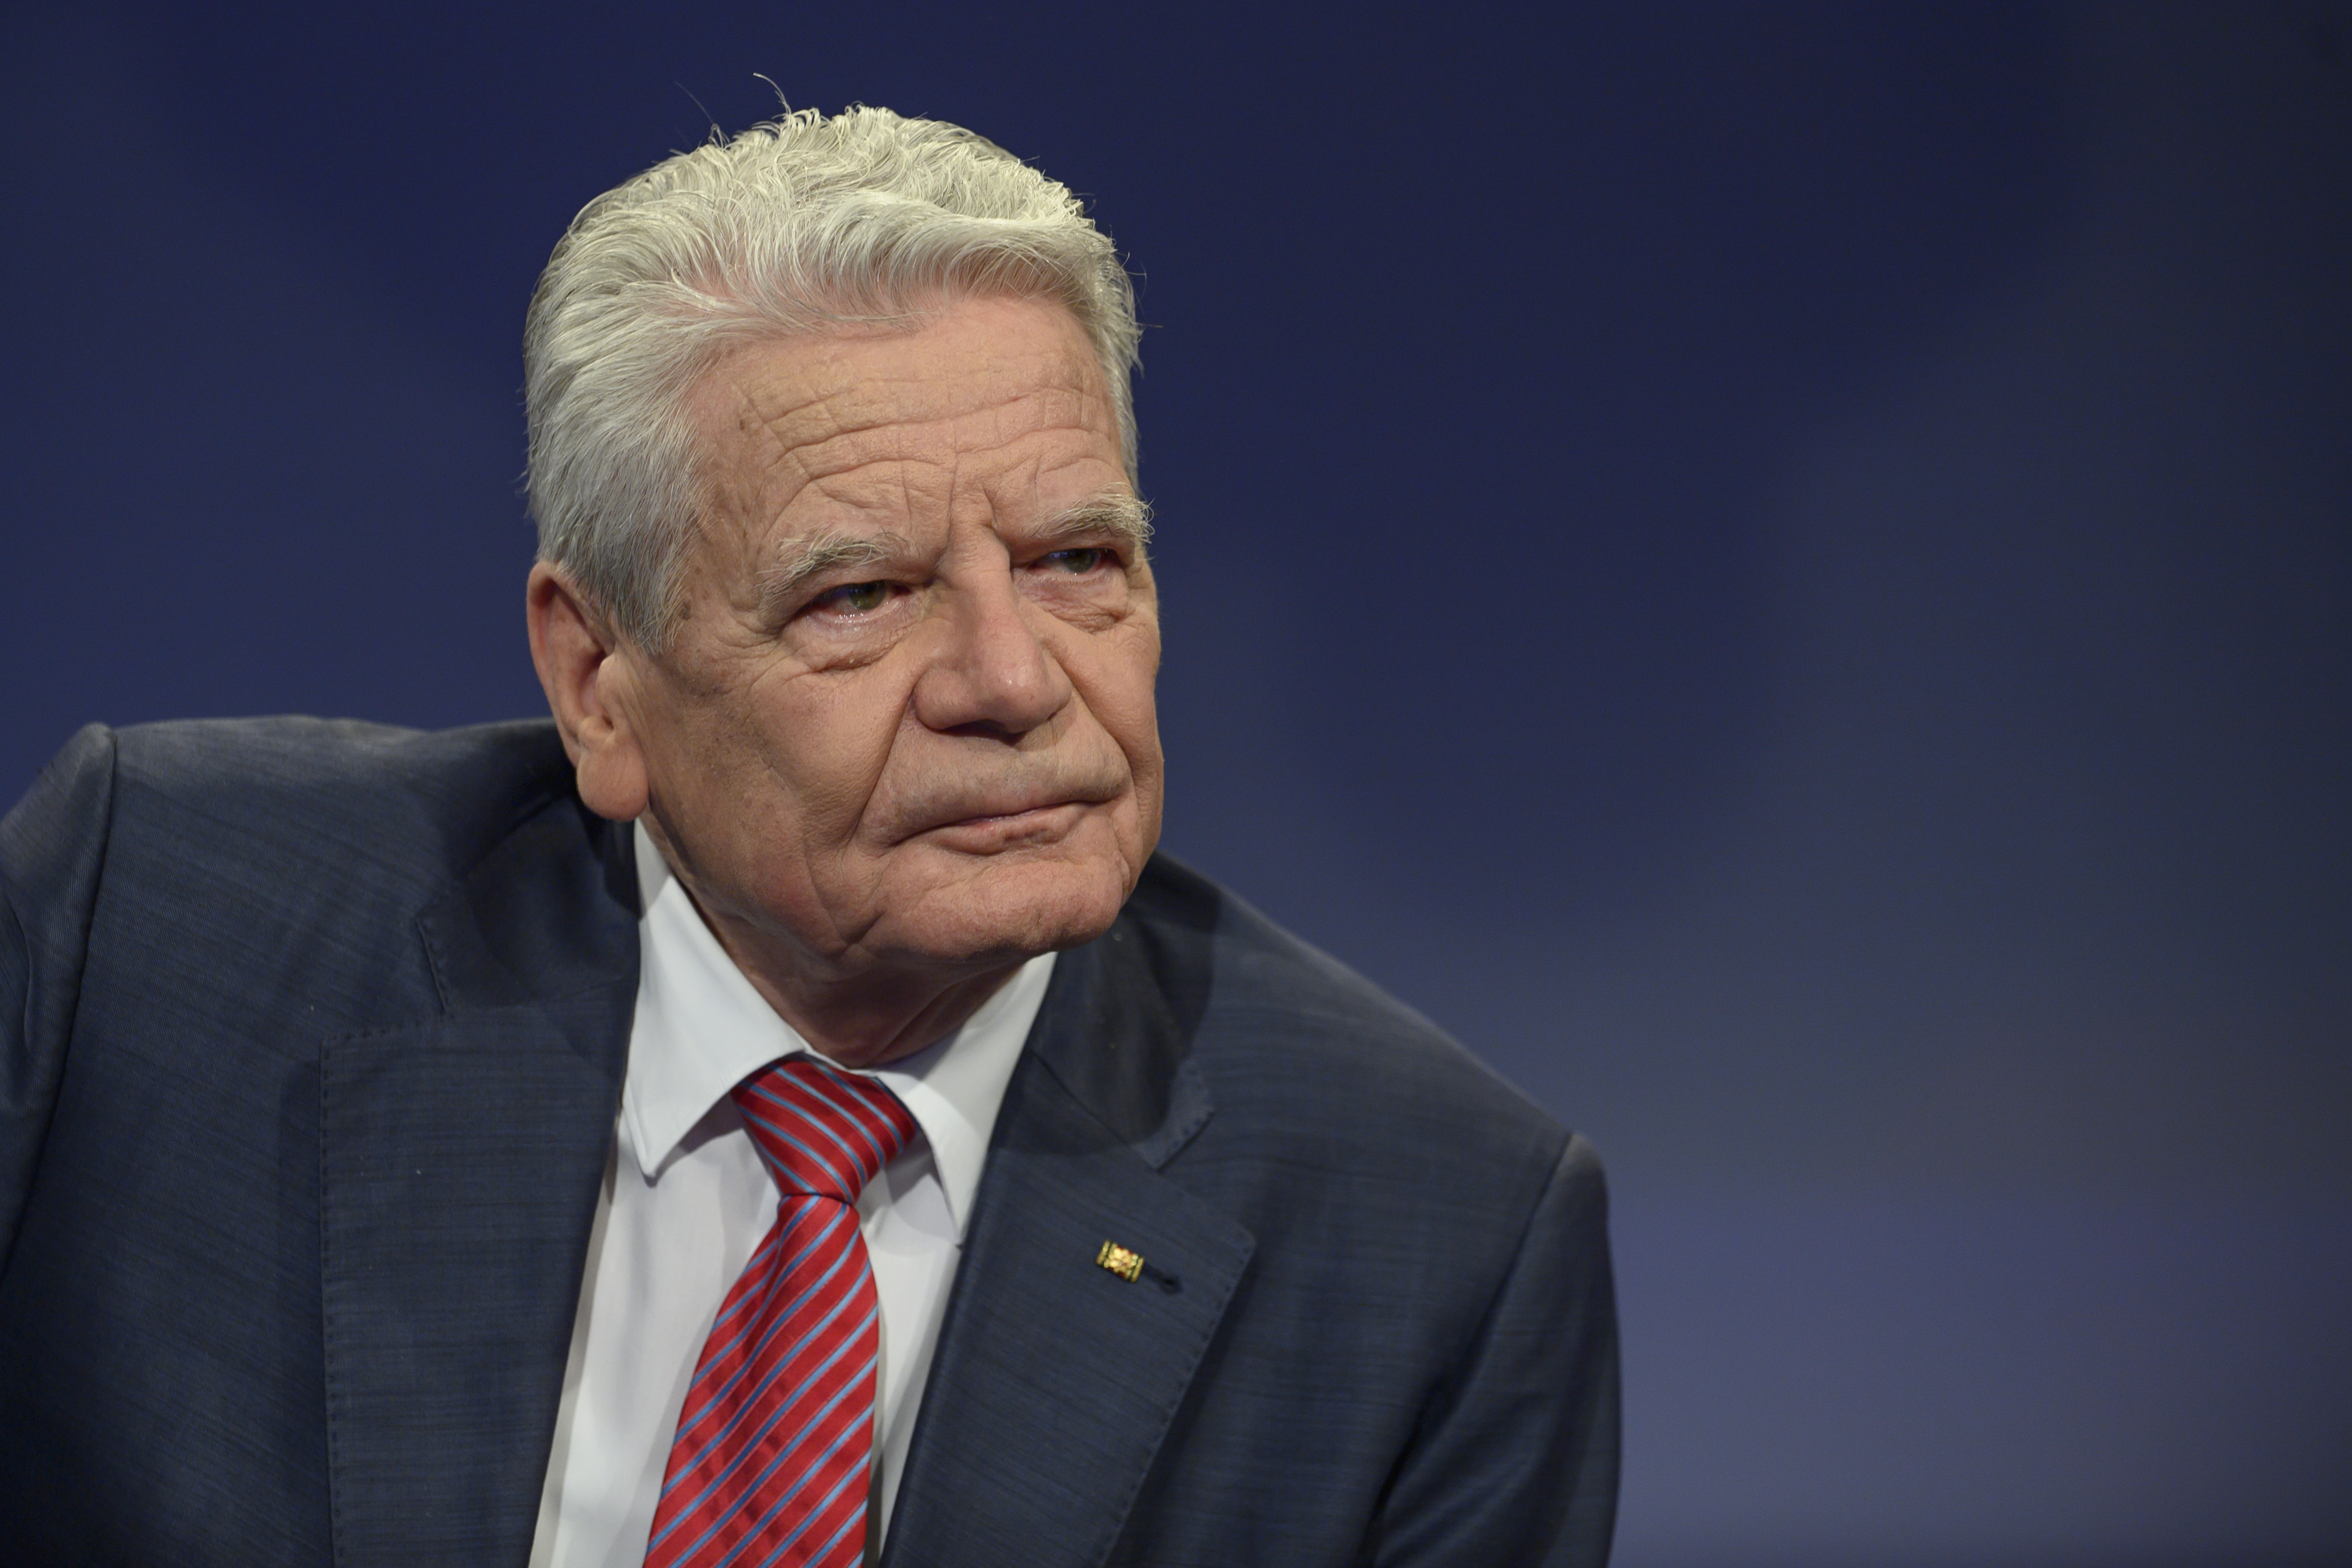 Krieg im Nahen Osten - Gauck kritisiert deutsche Enthaltung bei UNO-Resolution